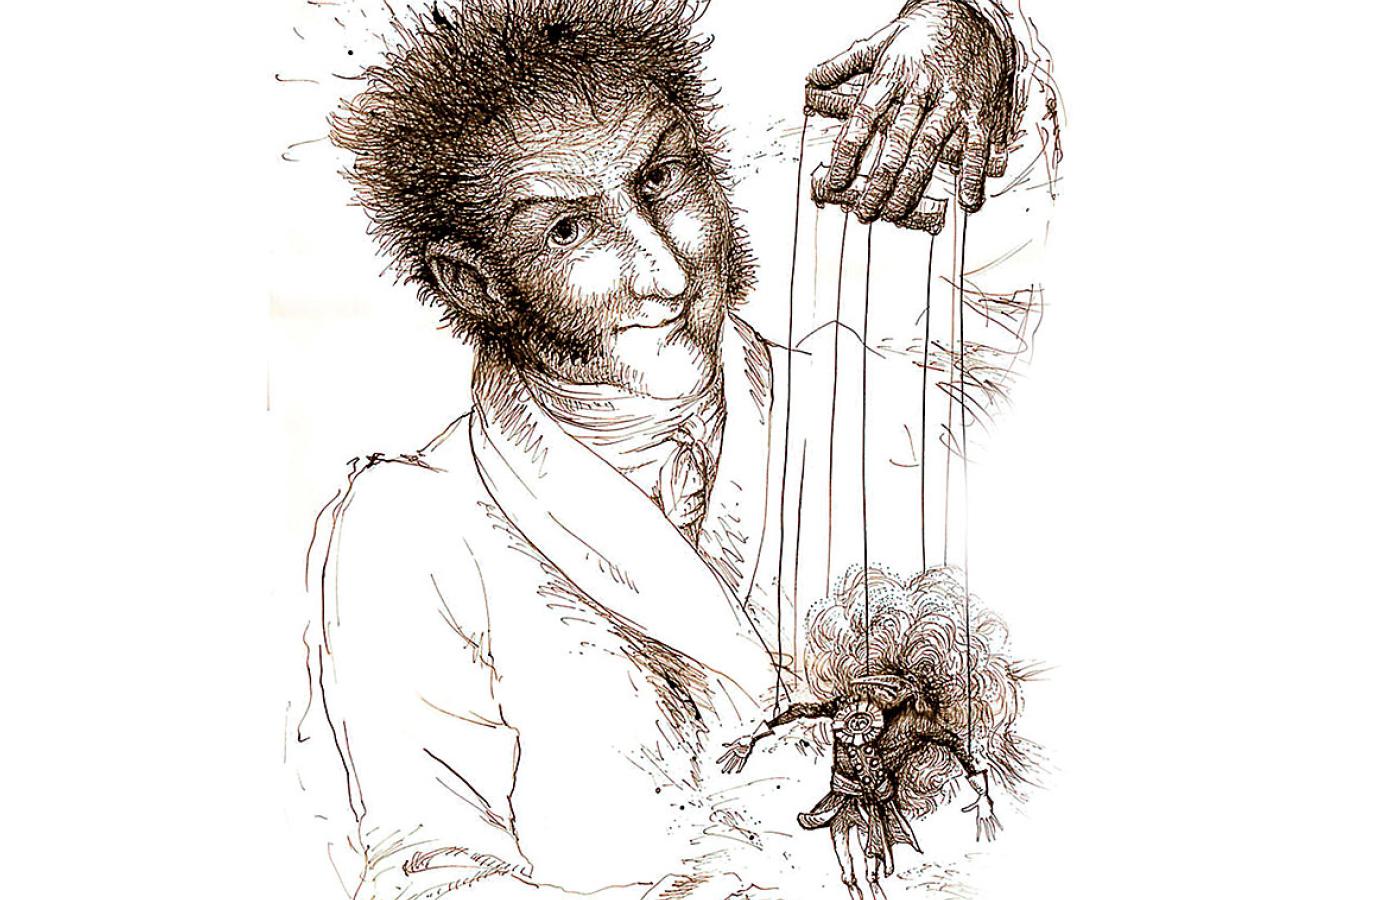 Współczesny rysunek Steffena Fausta przedstawiający E.T.A. Hoffmanna